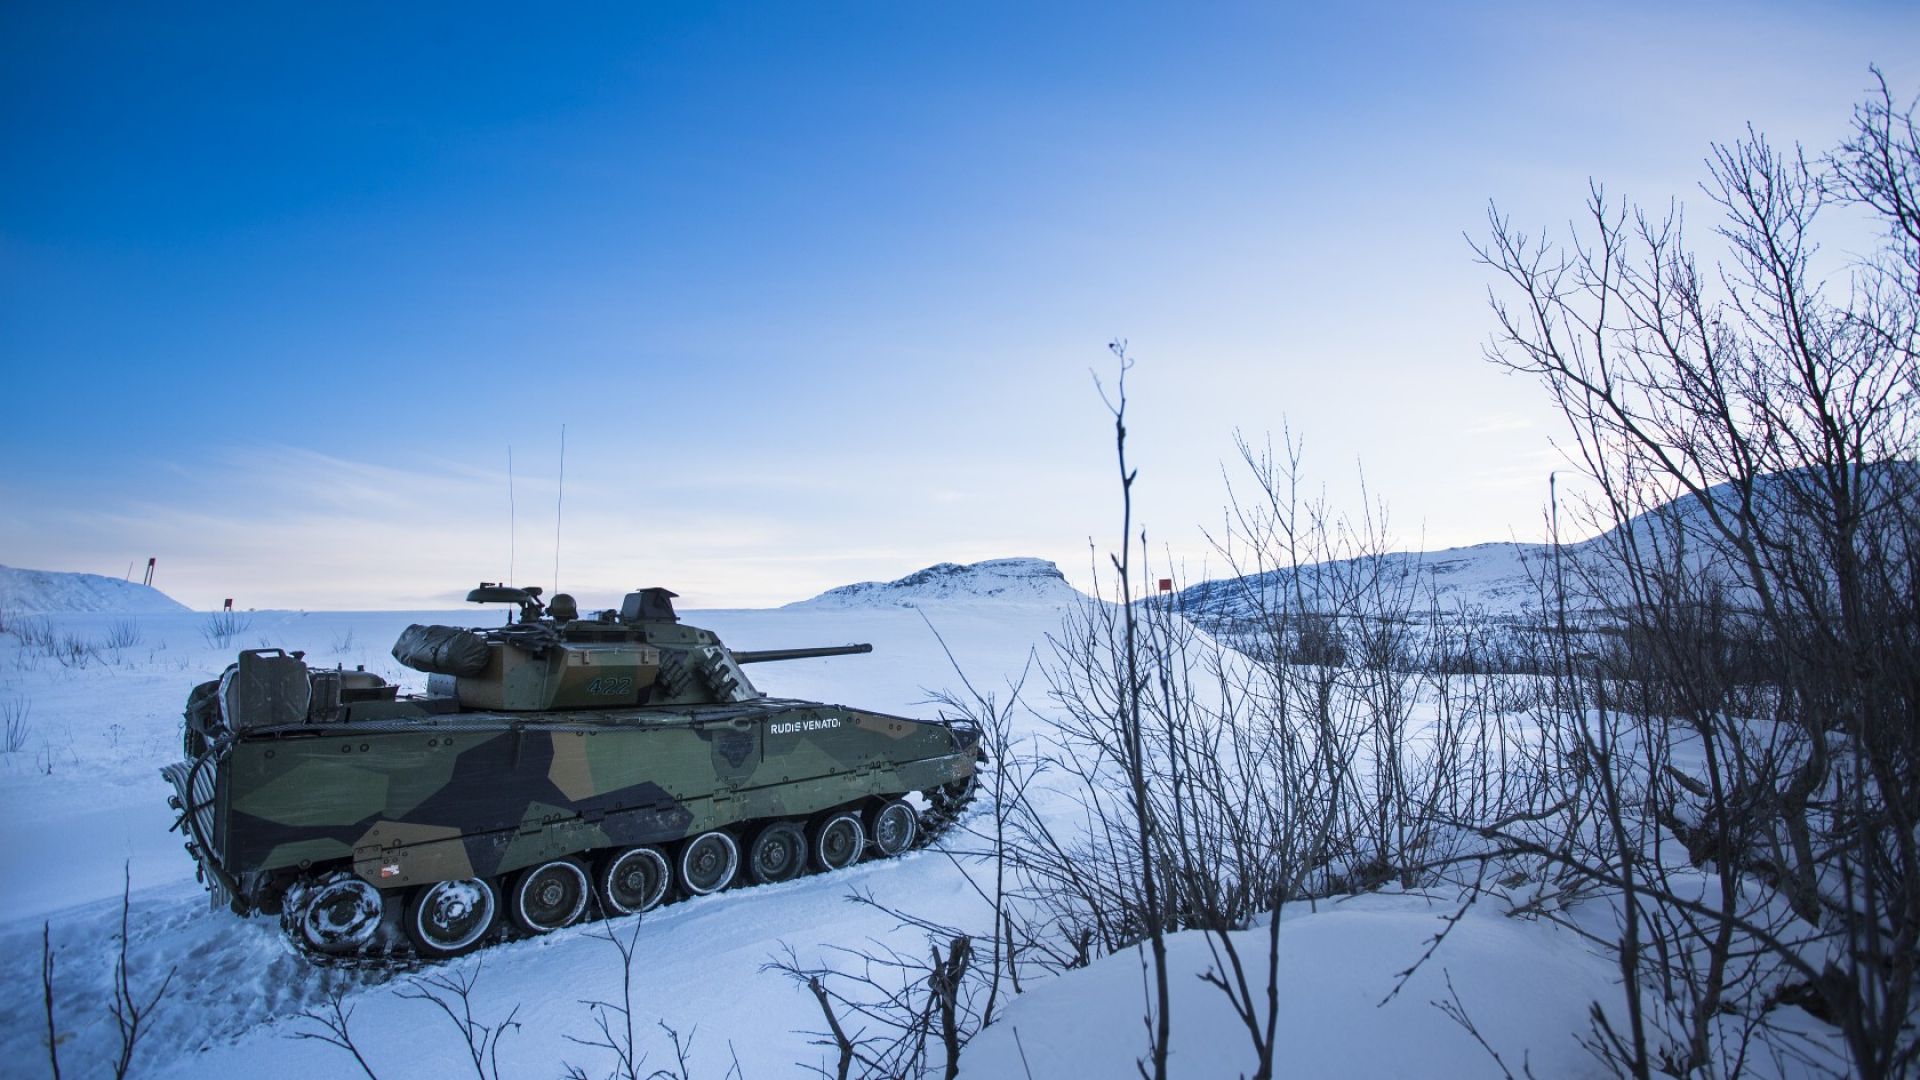 Стрф 90, боевая машина, Вооружённые силы Швеции, Strf 90, combat vehicle, Swedish army (horizontal)